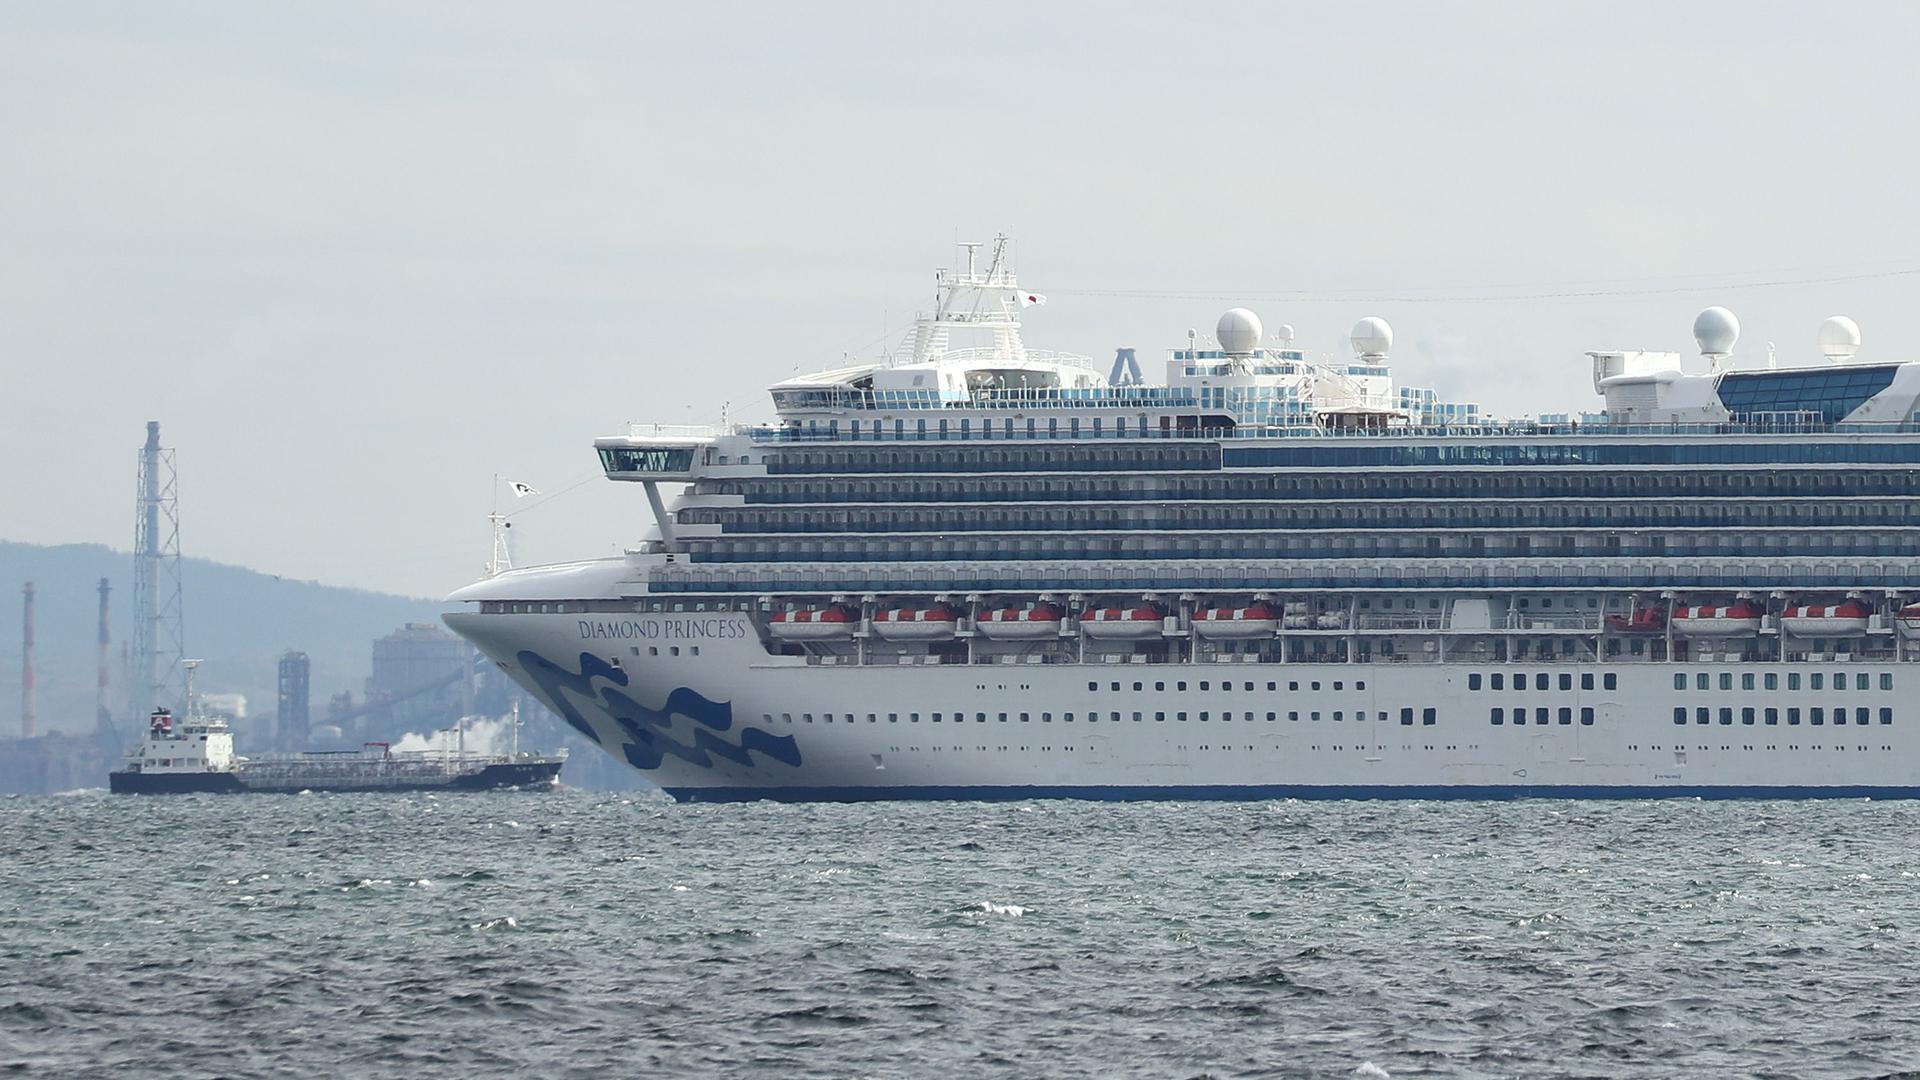 Le Diamond Princess et ses 3.711 passagers sont immobilisés dans le port de Yokohama, près de Tokyo